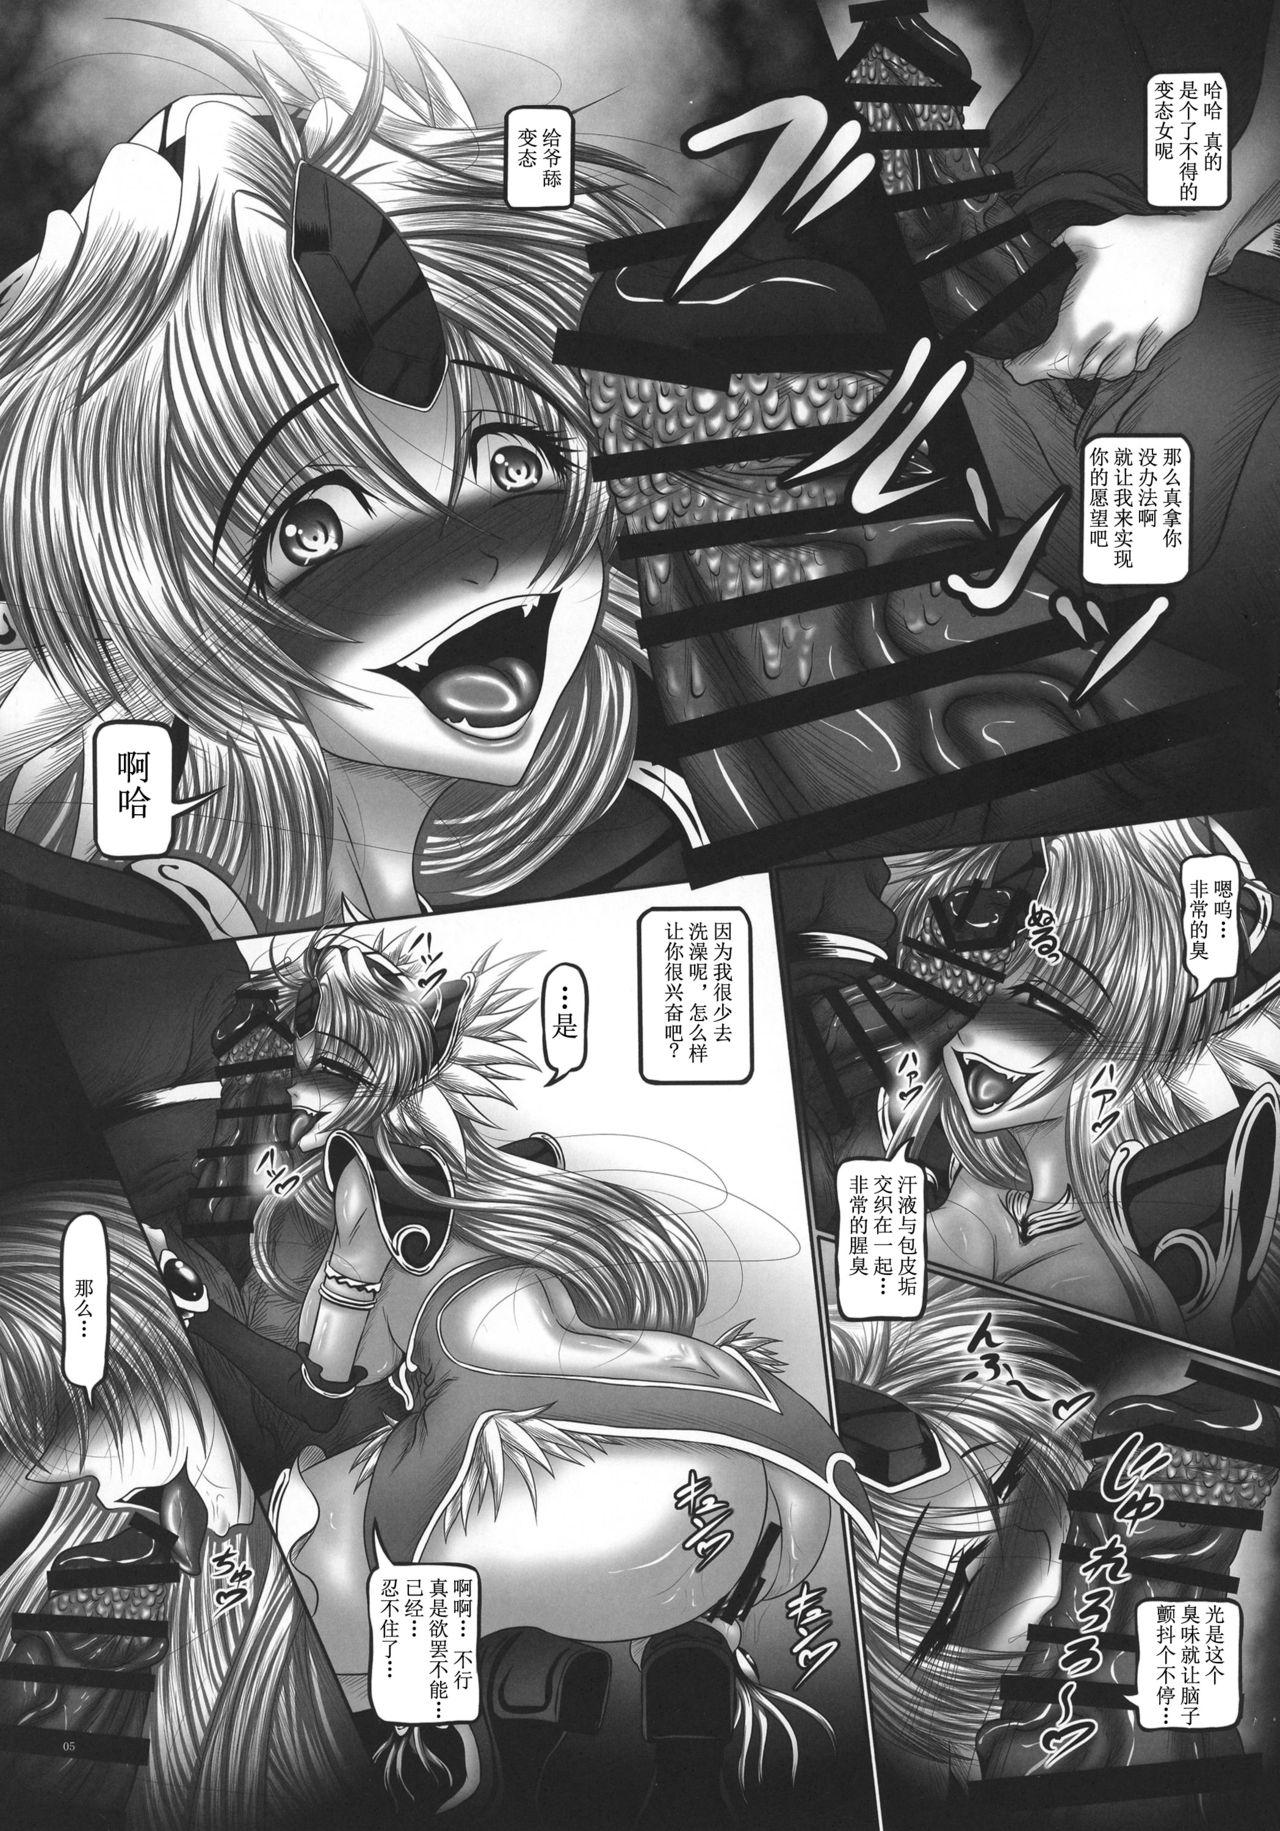 Bbc Dragon' s Fall II - Seiken densetsu 3 Seiken densetsu Twinkstudios - Page 5